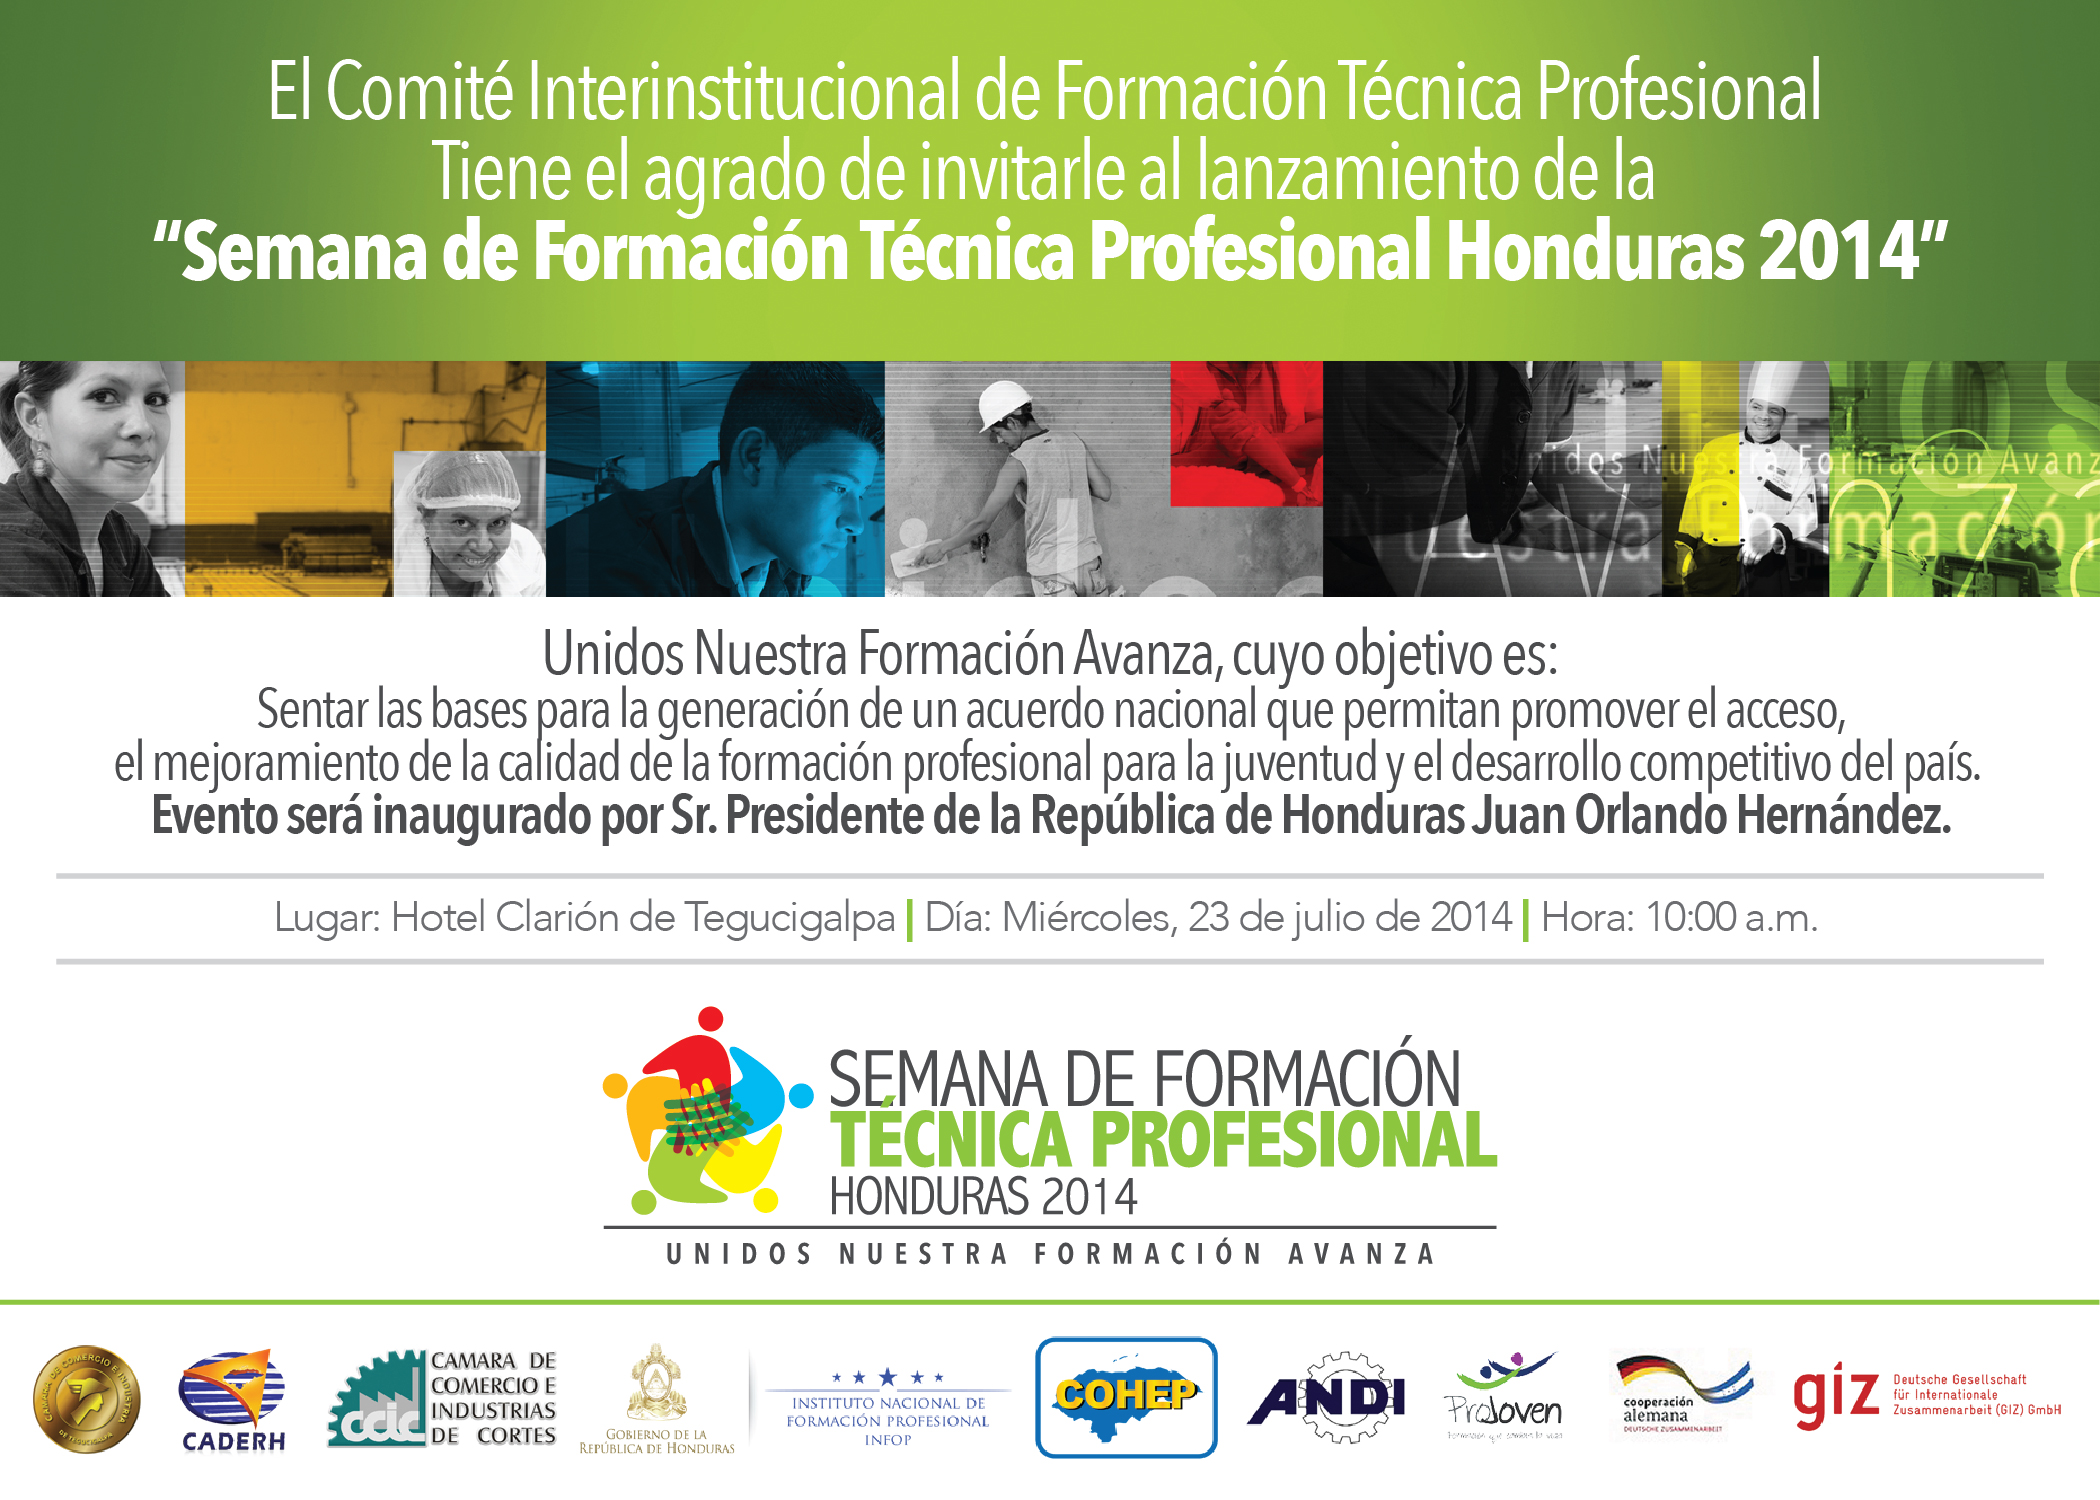 Semana de Formación Técnica Profesional Honduras 2014